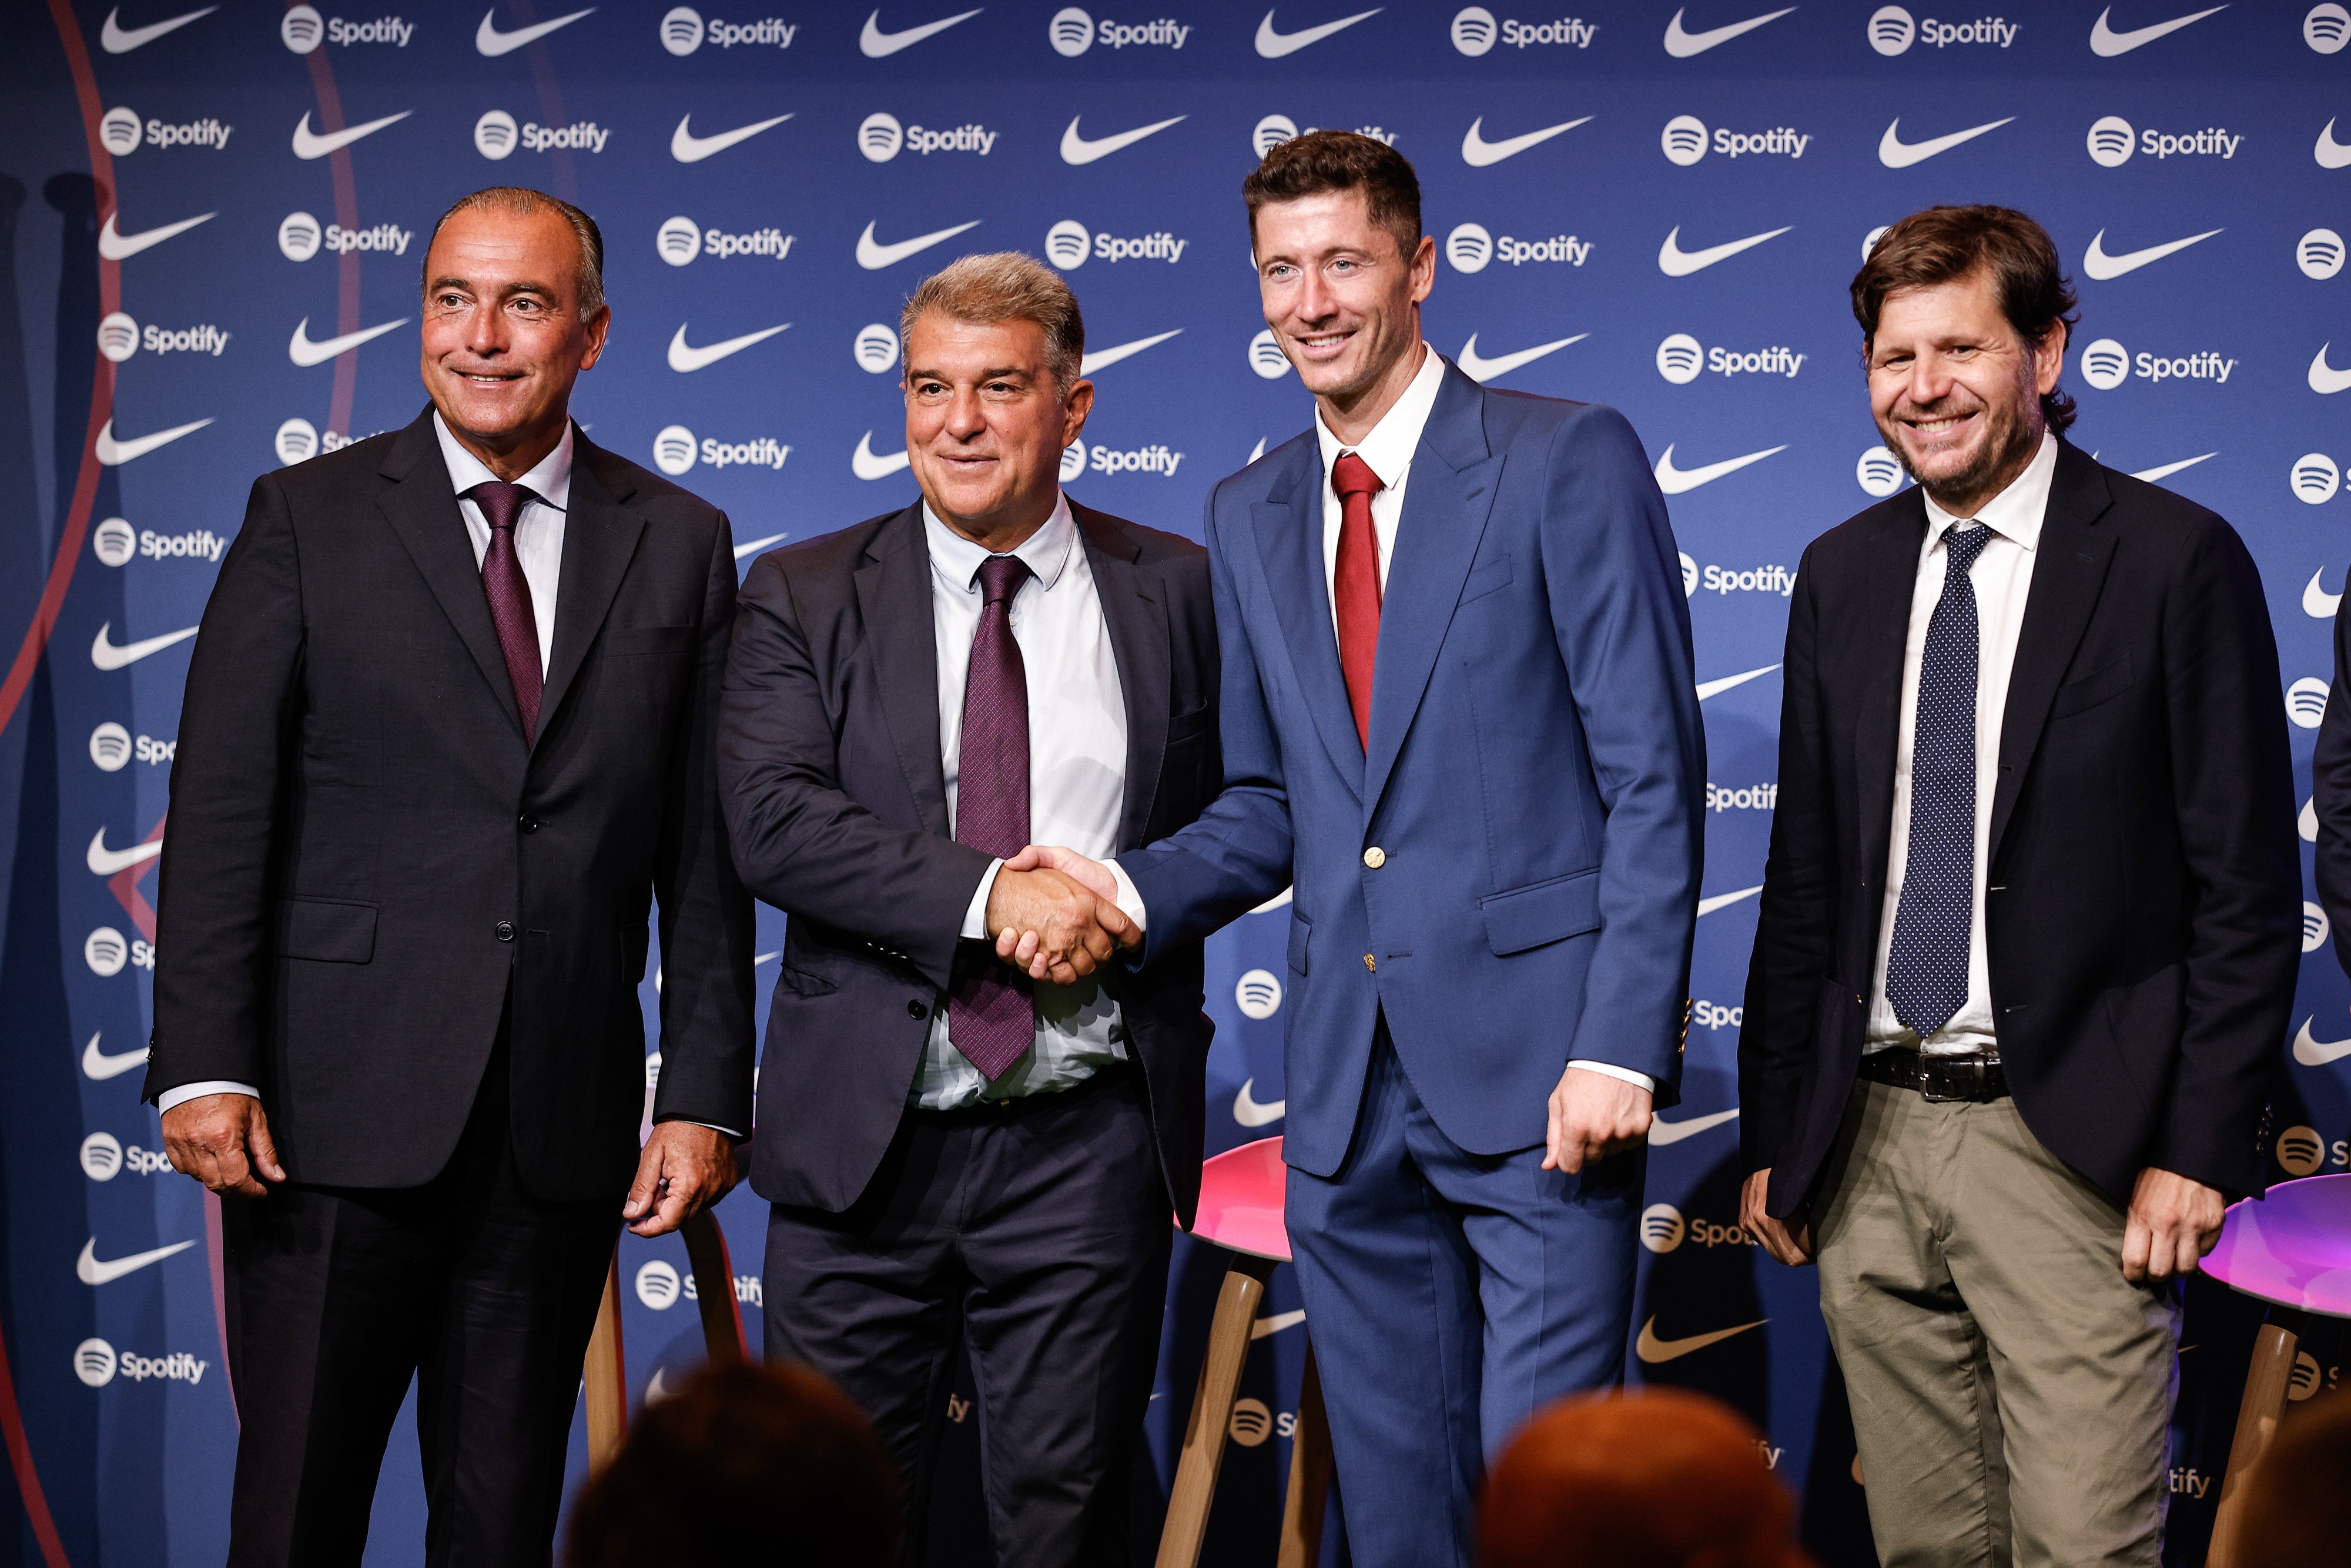 Mateu Alemany cierra el fichaje, el acuerdo con el Barça es total: oficial en menos de 6 meses